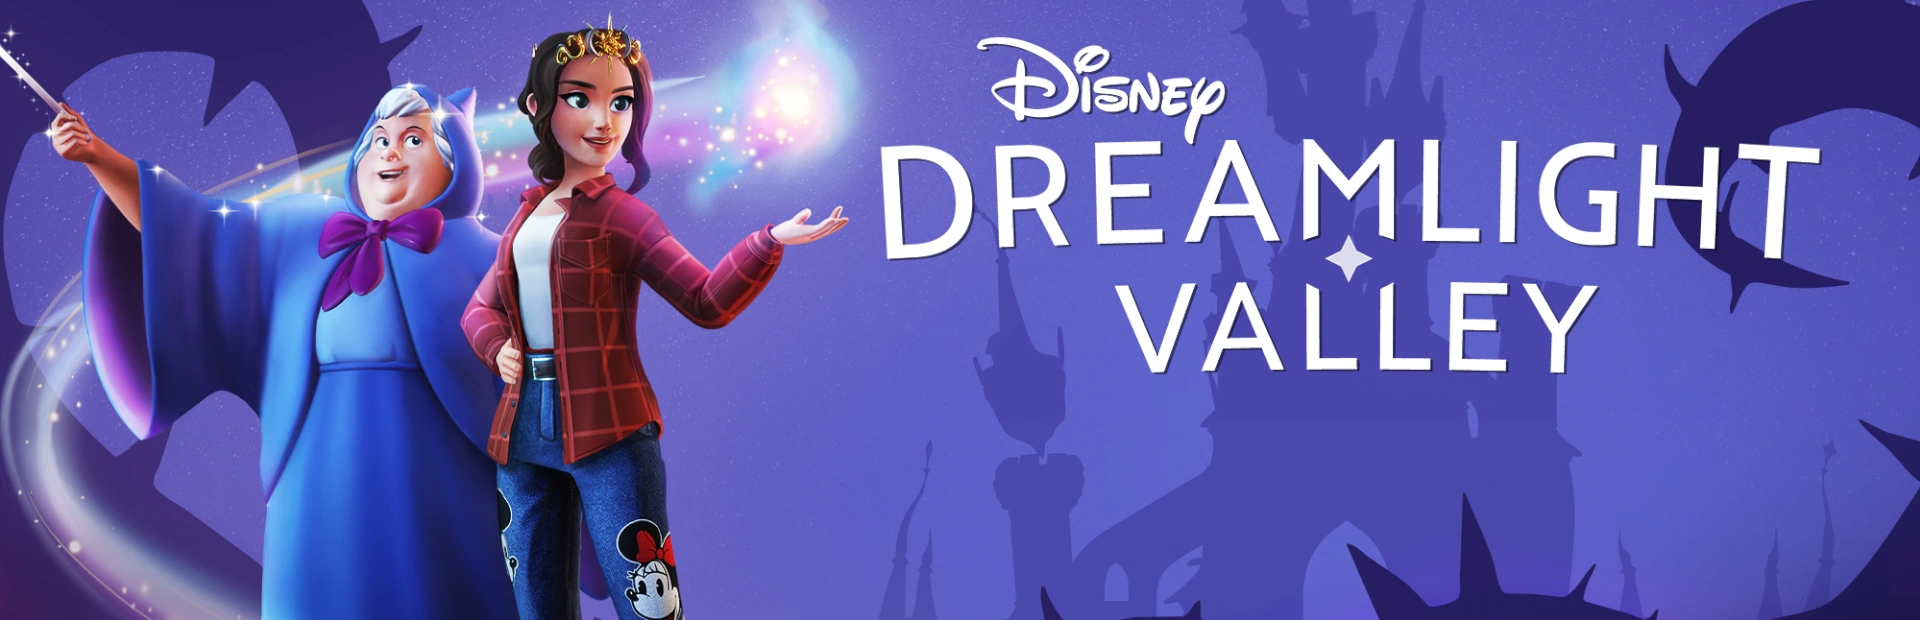 دانلود بازی Disney Dreamlight Valley برای کامپیوتر | گیمباتو